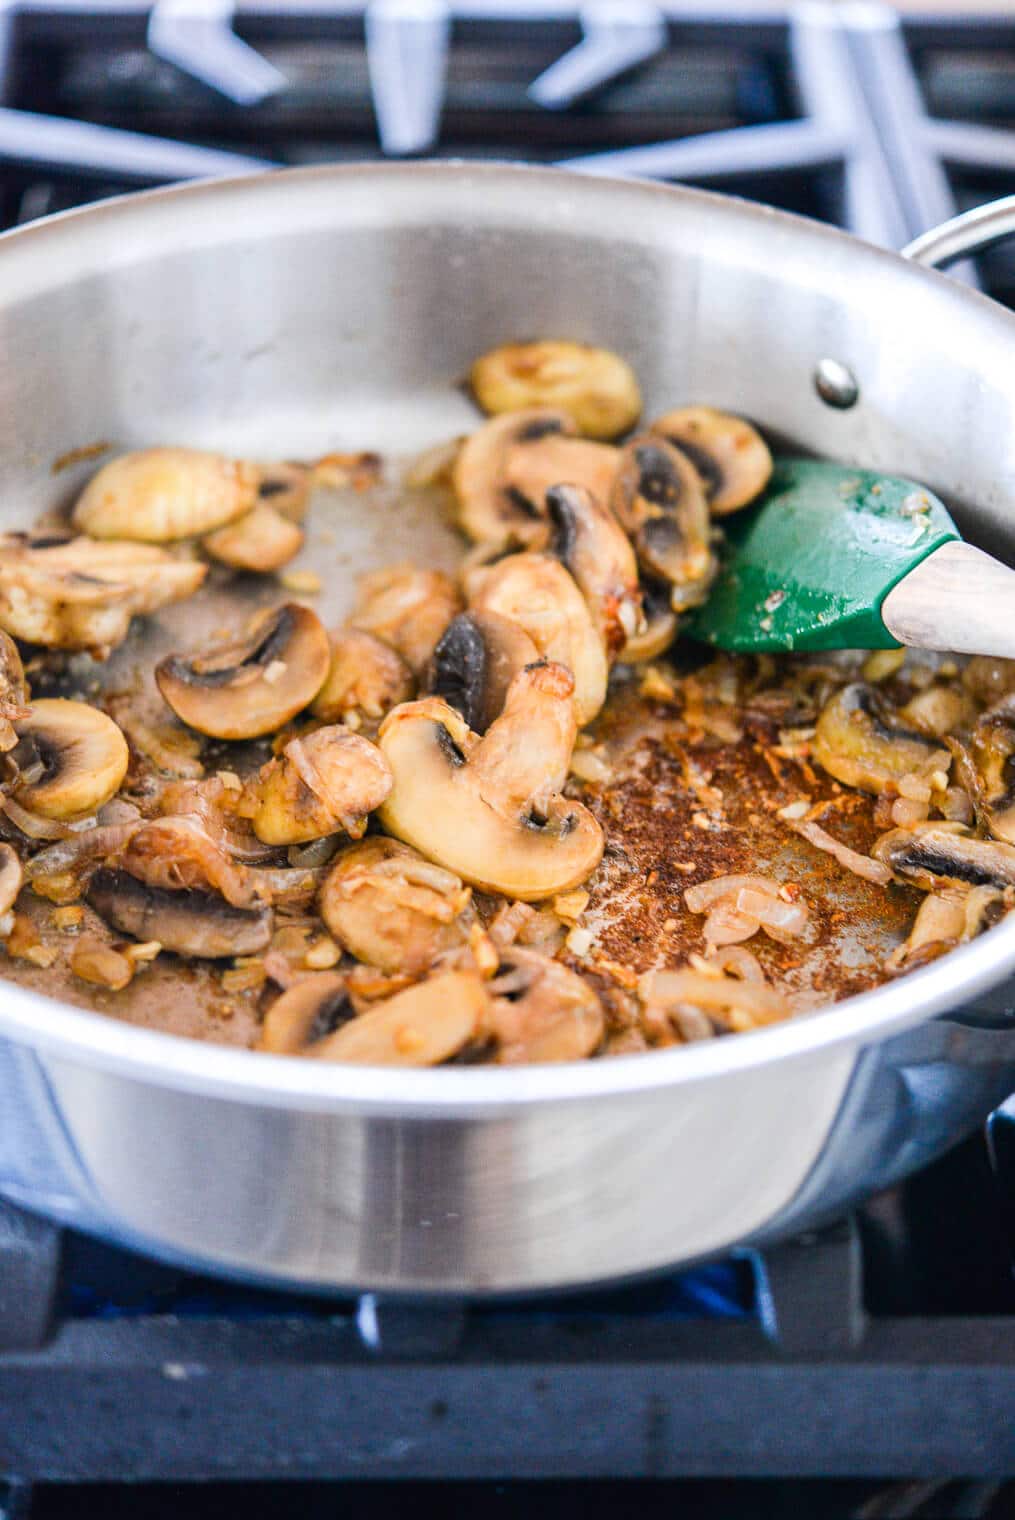 sauteed shallots, garlic, and mushrooms in a skillet